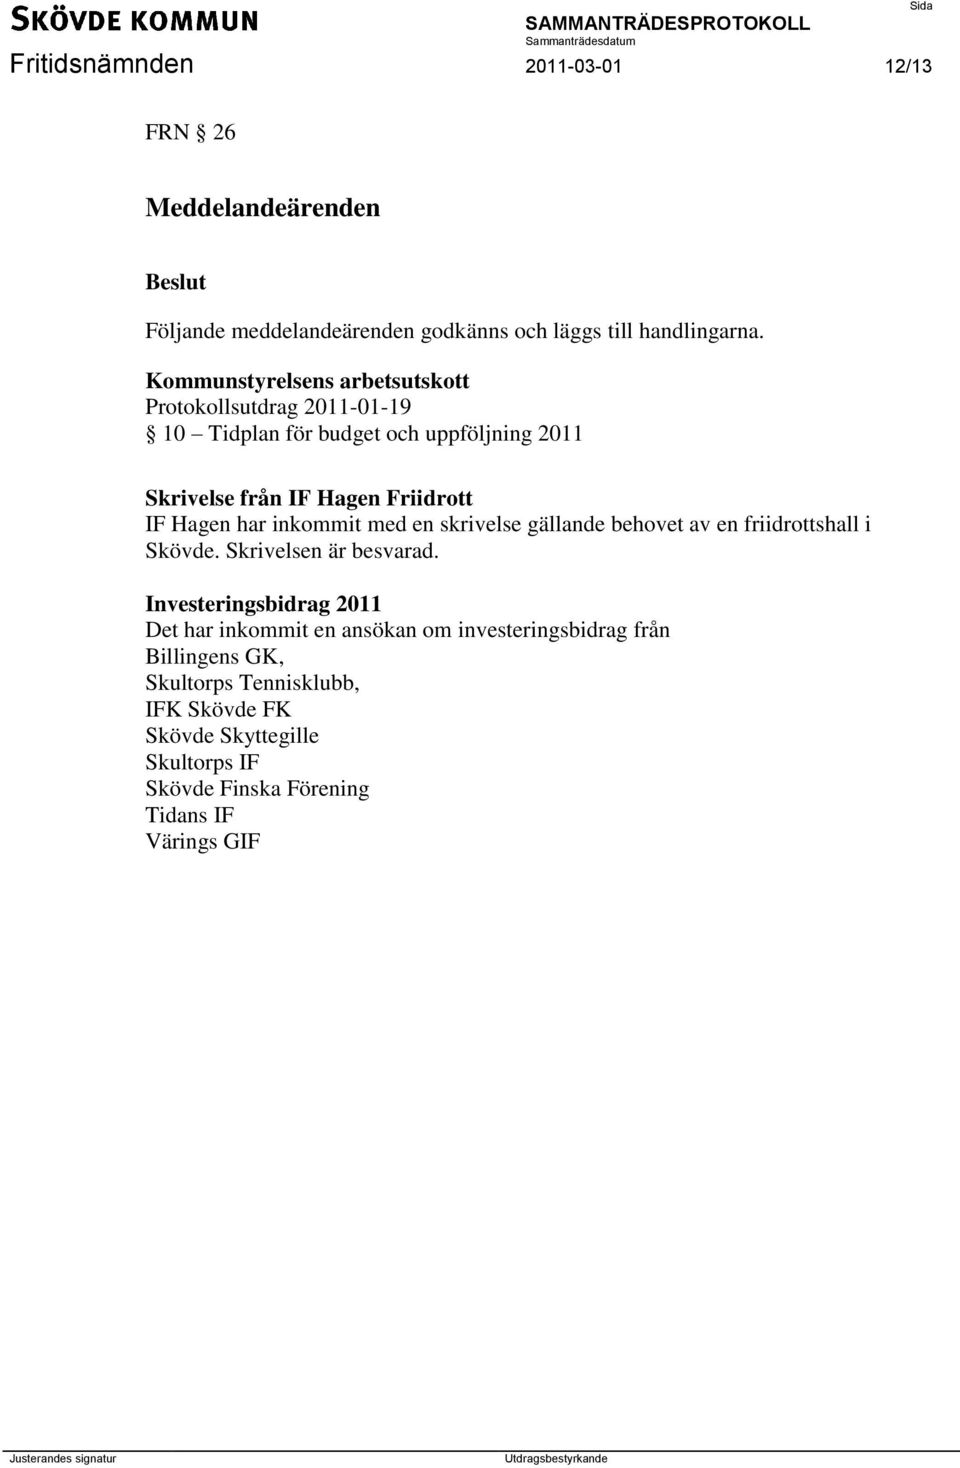 Hagen har inkommit med en skrivelse gällande behovet av en friidrottshall i Skövde. Skrivelsen är besvarad.